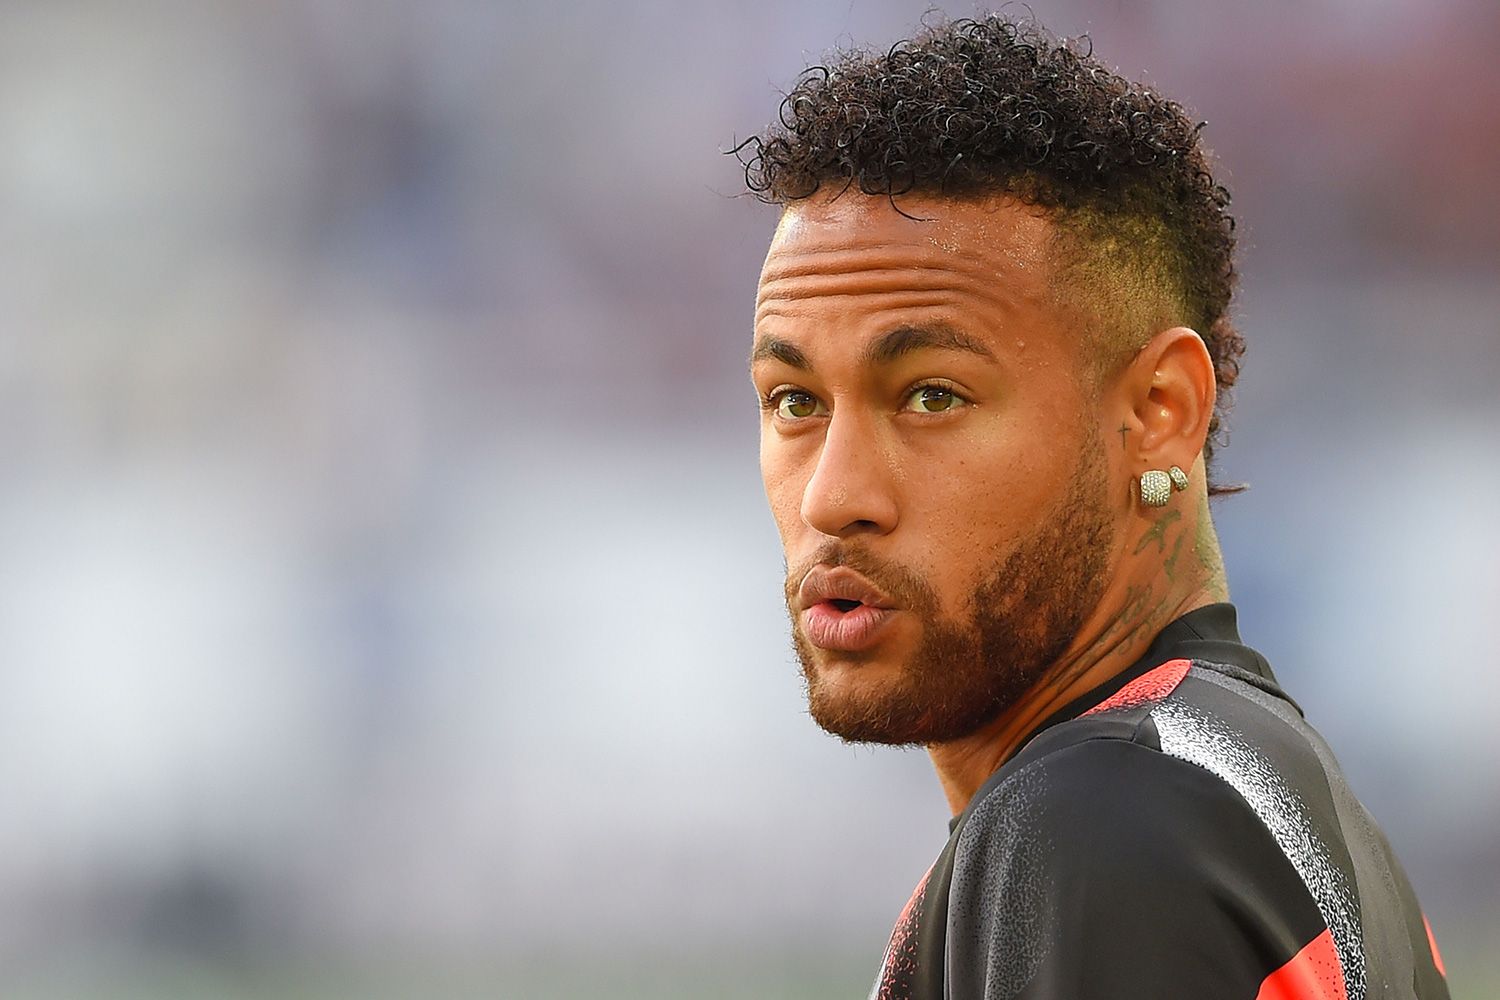 do u like neymar's new hairstyle? 👀 | Hairstyle neymar, Neymar jr, Neymar